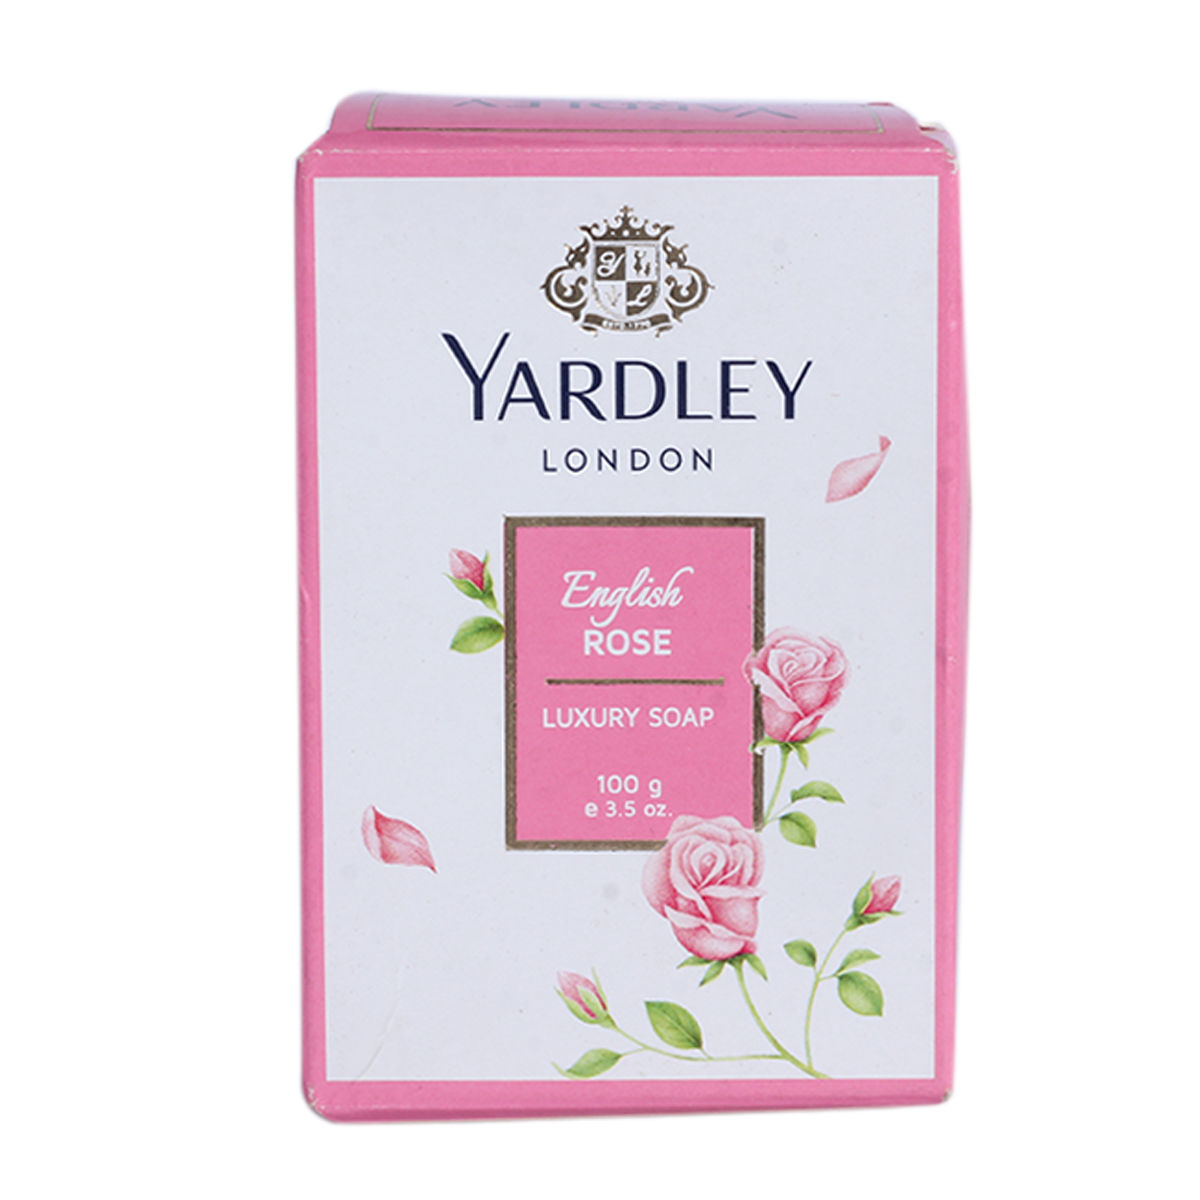 Yardley London English Rose Luxury Soap, 100 gm, Pack of 1 